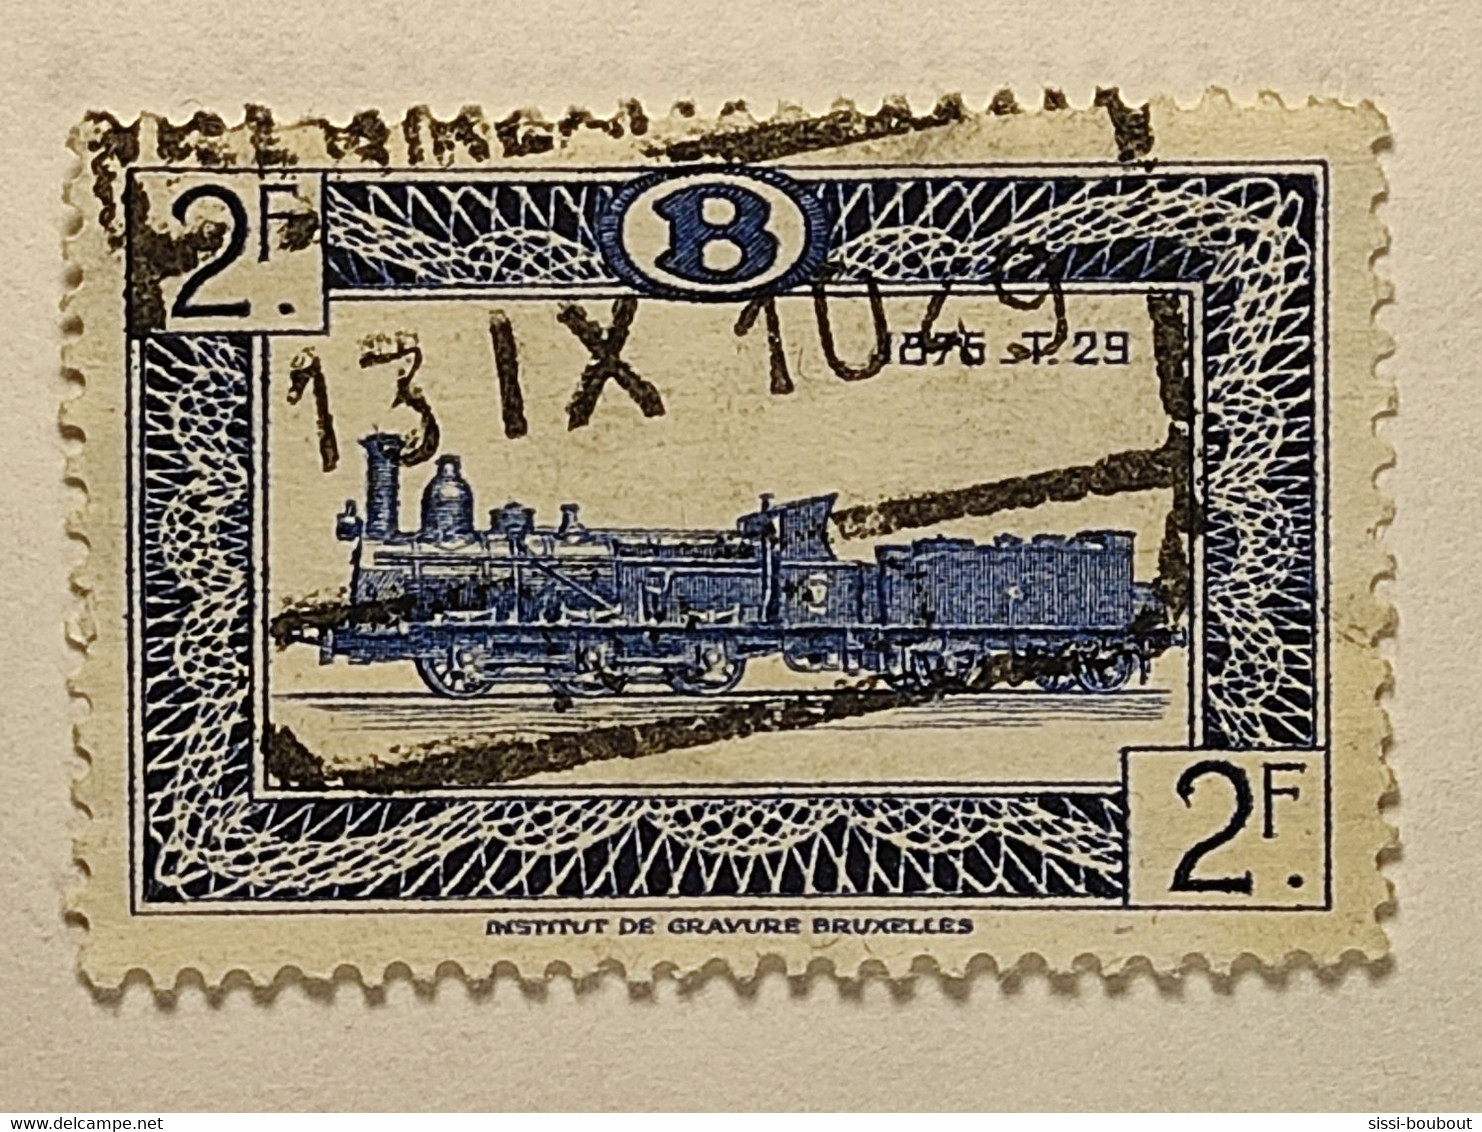 Timbres De BELGIQUE "Oblitérés" - Poste Timbres Colis Postaux - N° (Voir Au Descriptif) - Stamps